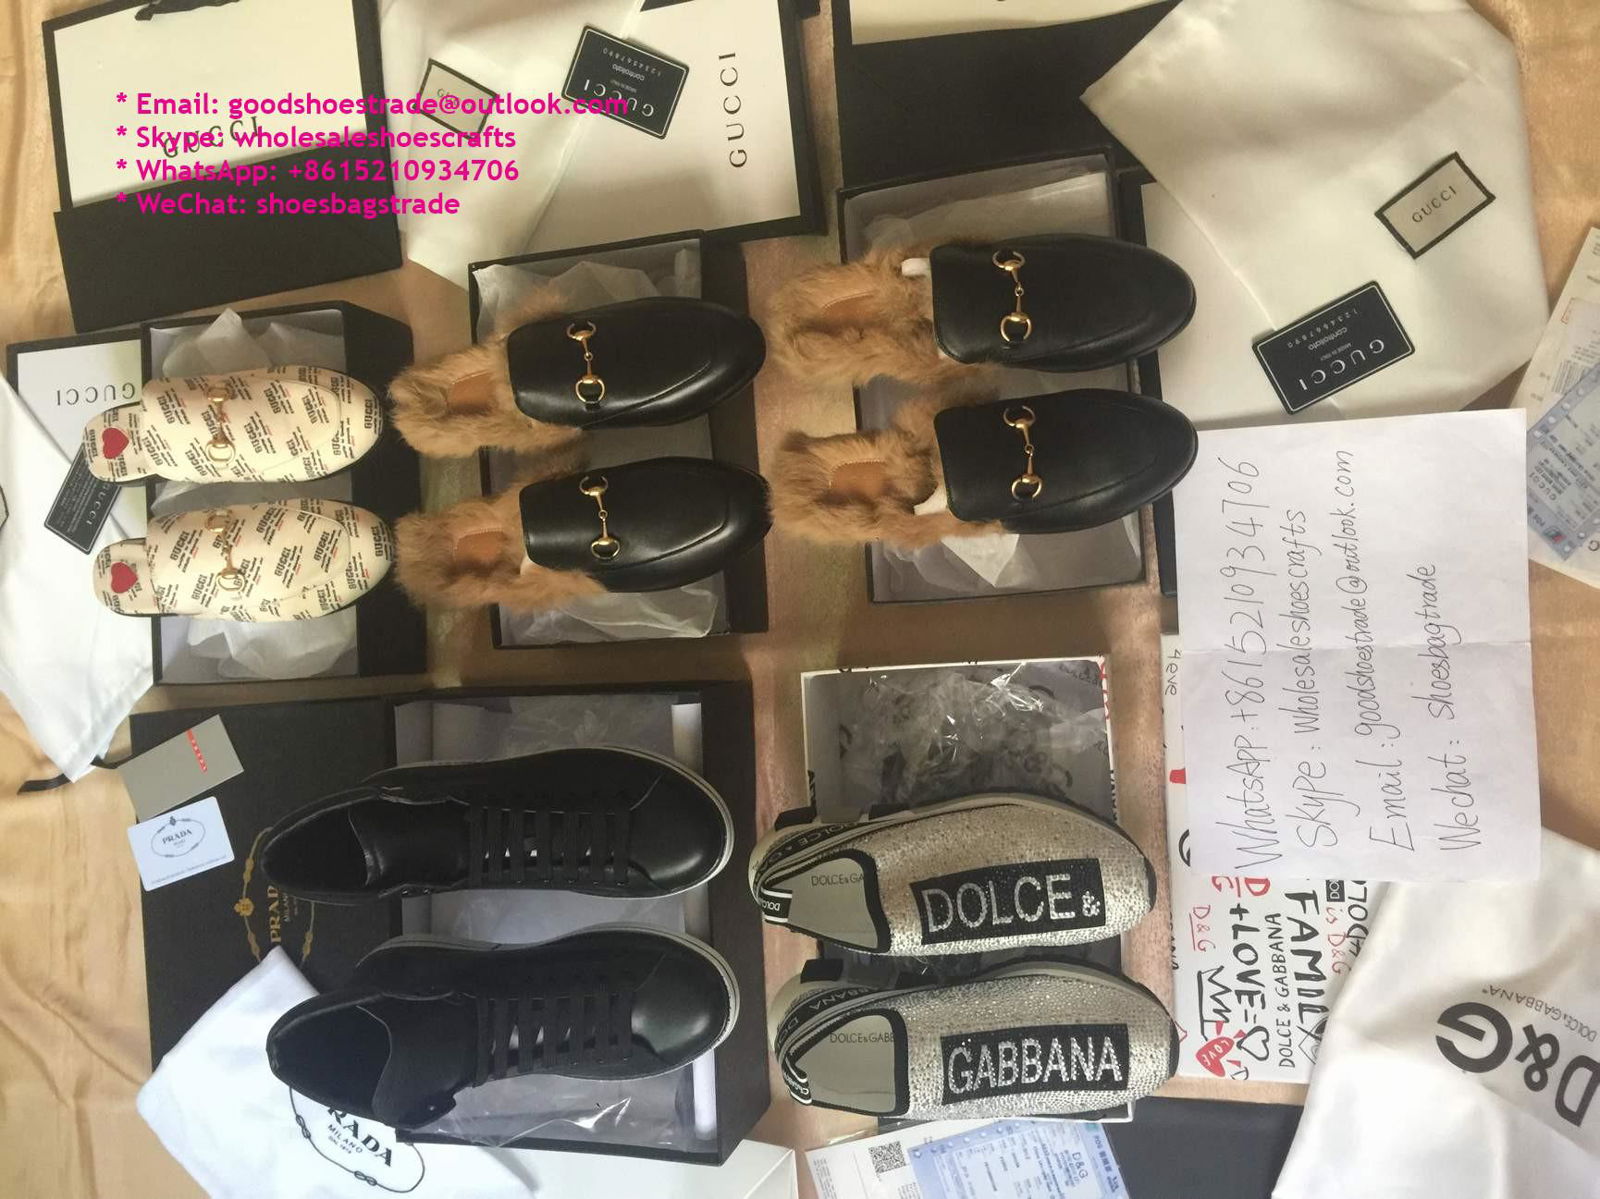       loafer       princetown leather slipper with fur       velvet slipper mule 3